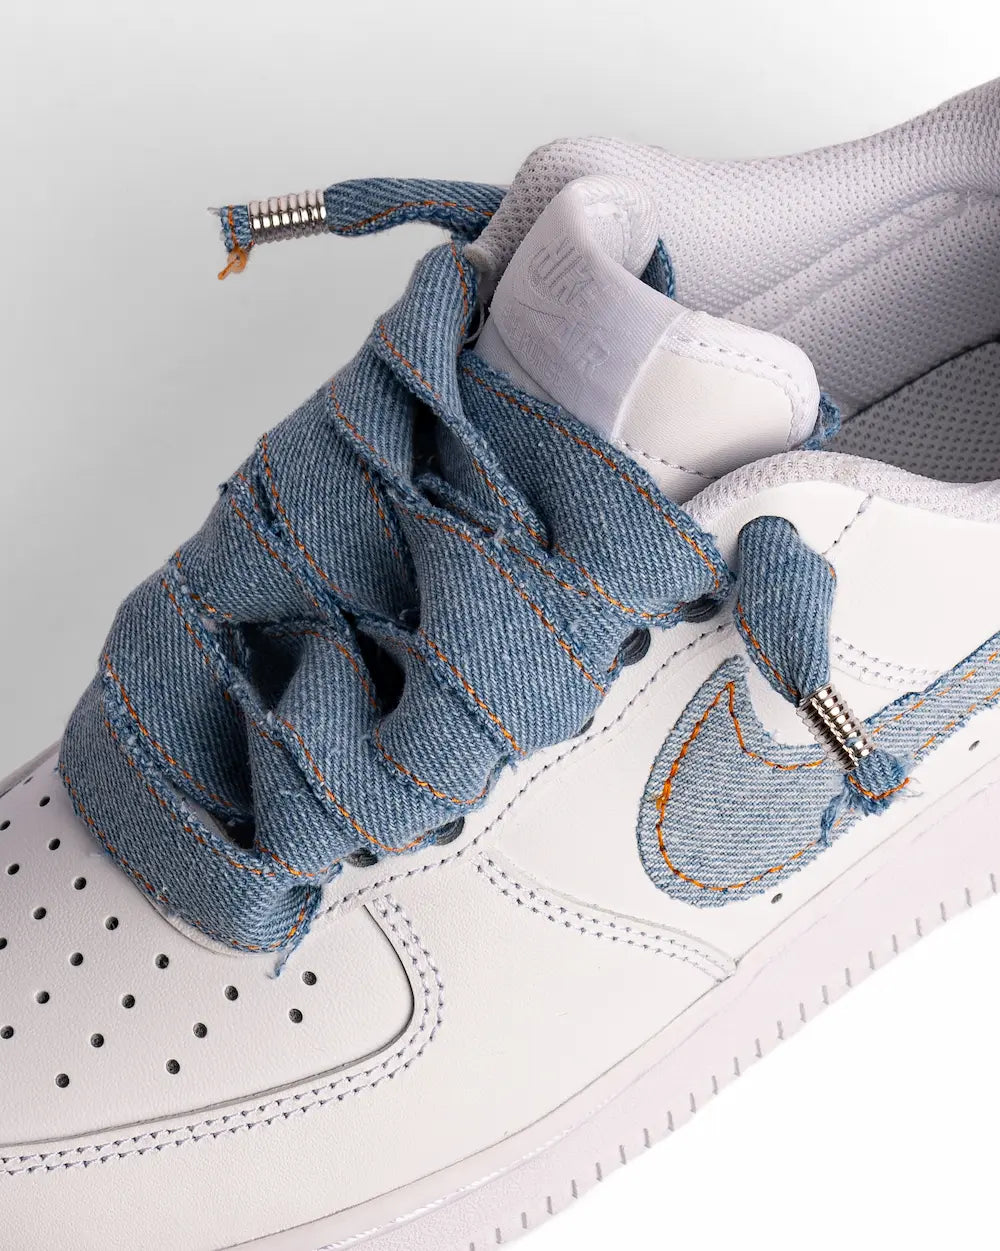 Nike Air Force 1 custom con Swoosh rivestito in jeans e lacci interamente realizzati a mano in denim